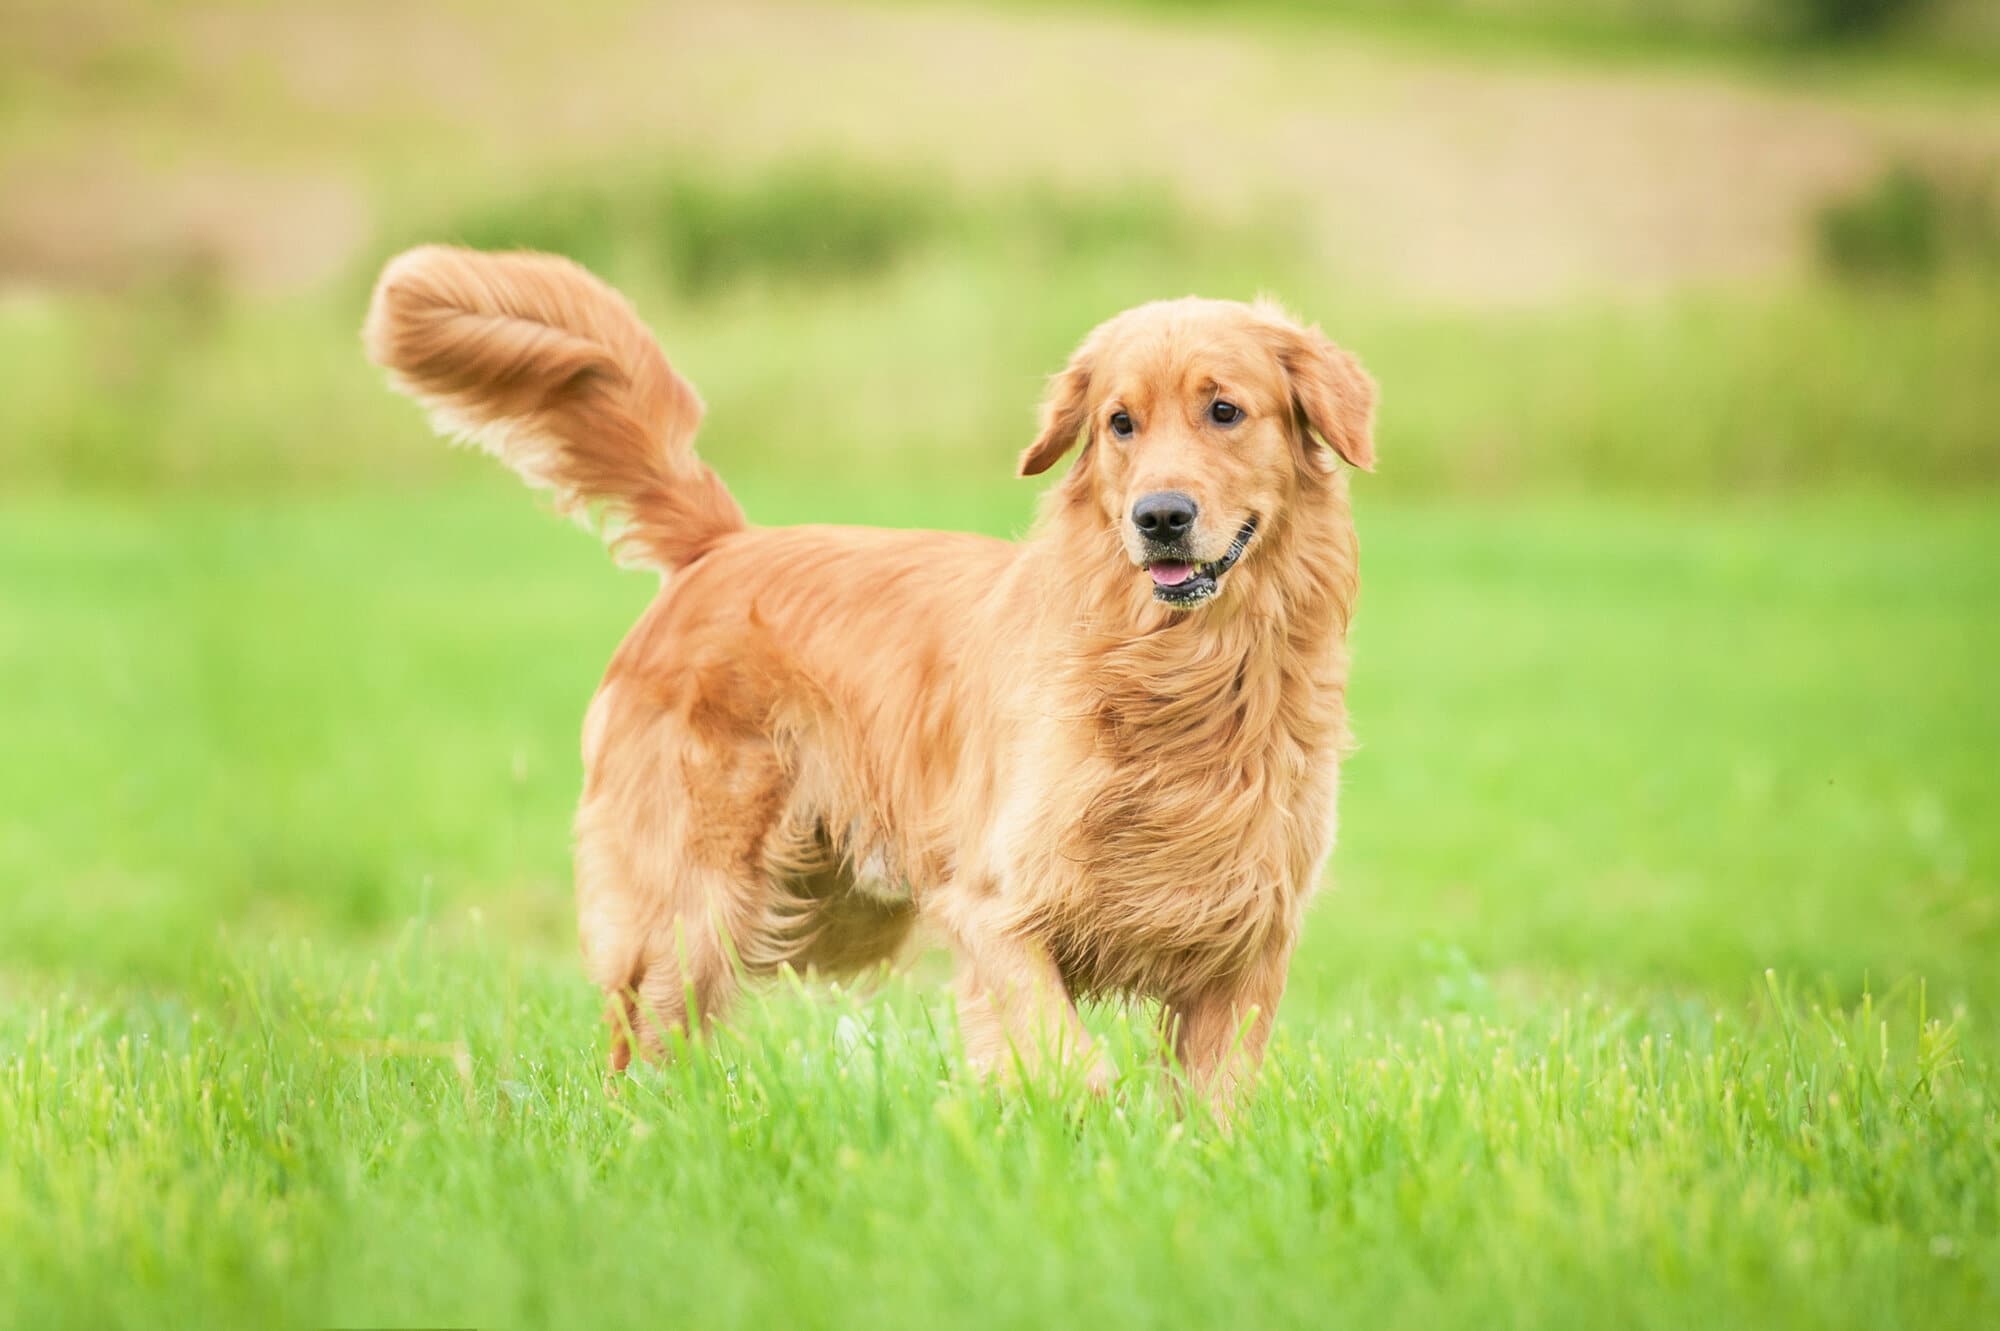 A golden retriever dog standing in a field of grass